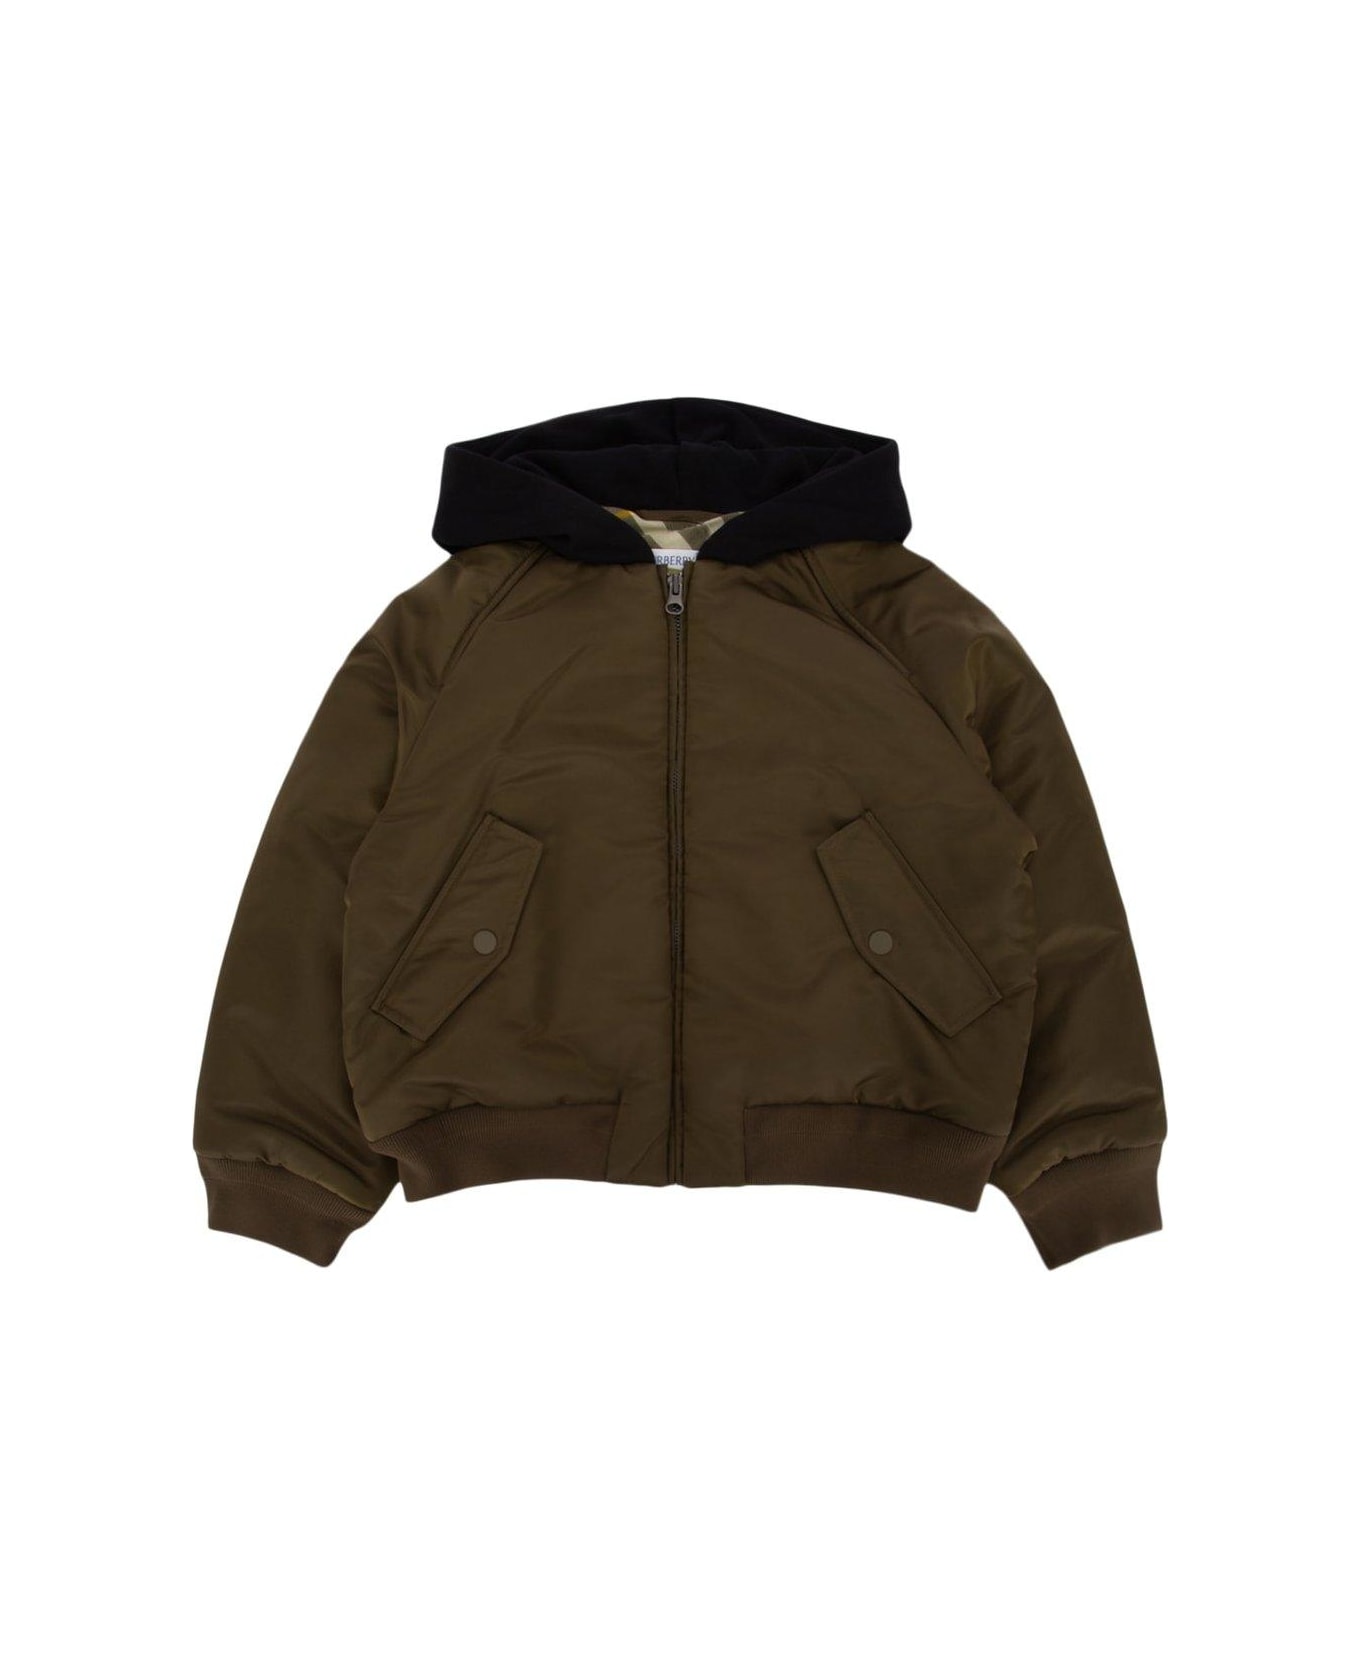 Burberry Zip-up Hooded Jacket - Verde